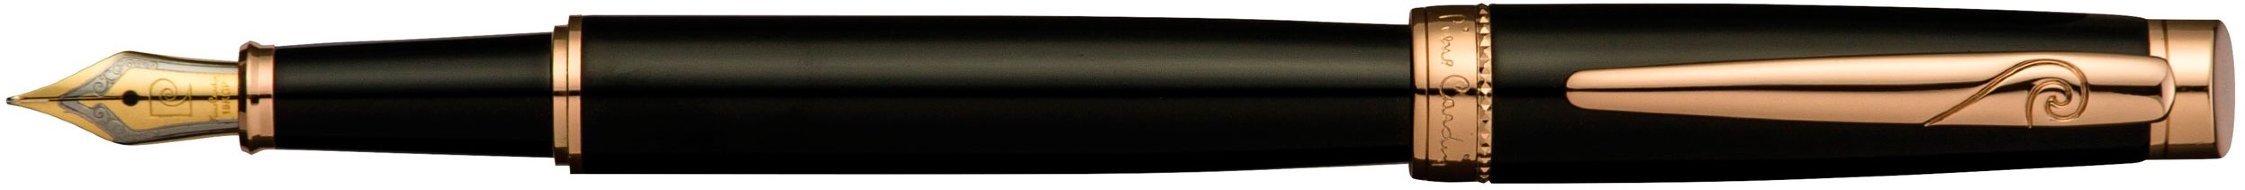 Перьевая ручка Pierre Cardin Luxor черный лак, позолота